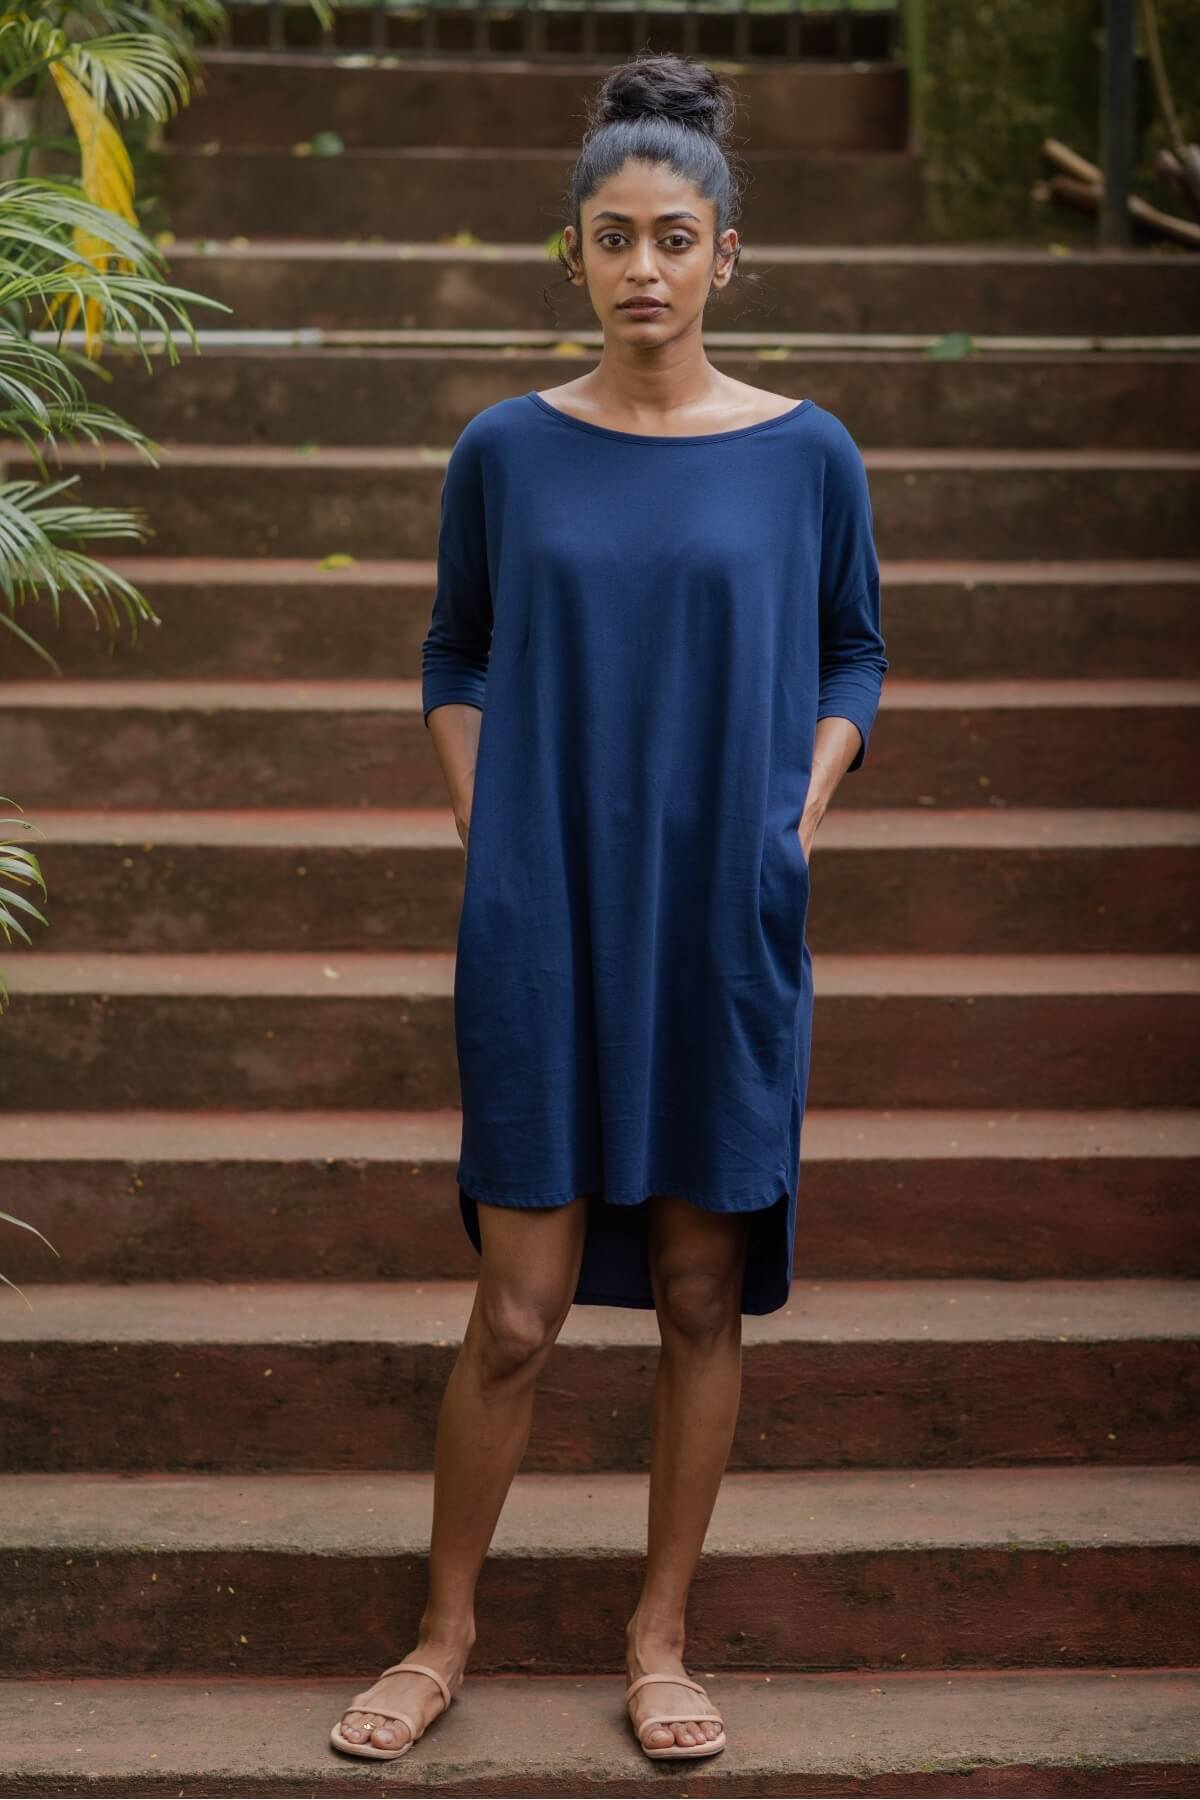  Chatou Tunic Blue Organic Cotton Summer Dress For Women 